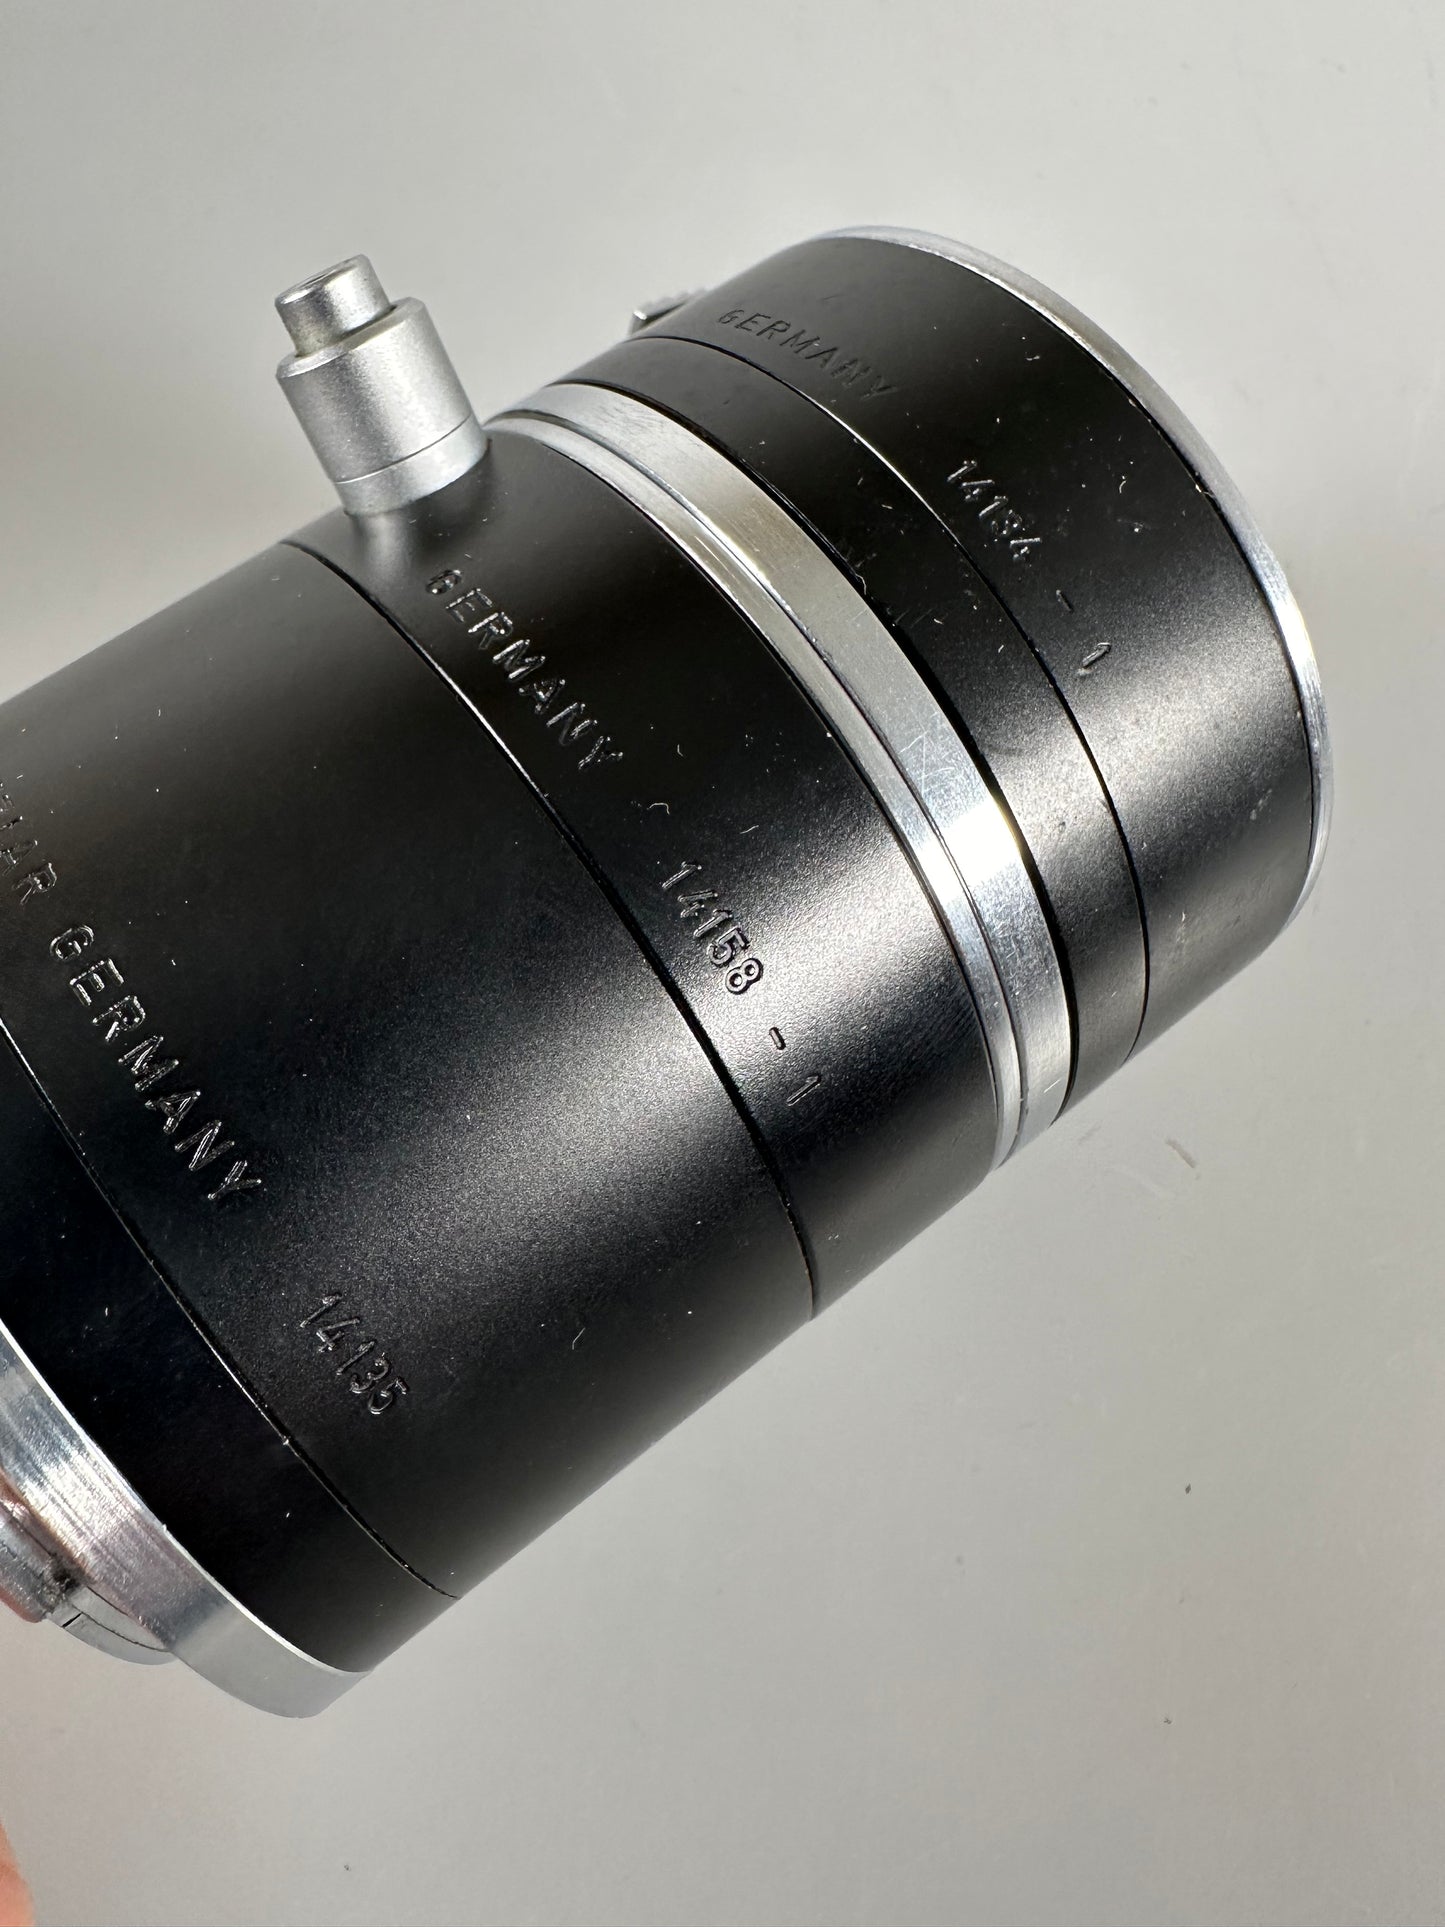 Leica R Mount Macro Extension Tube #14158 -1, 14158 -2 & 14135, 14134, 14134 - 2